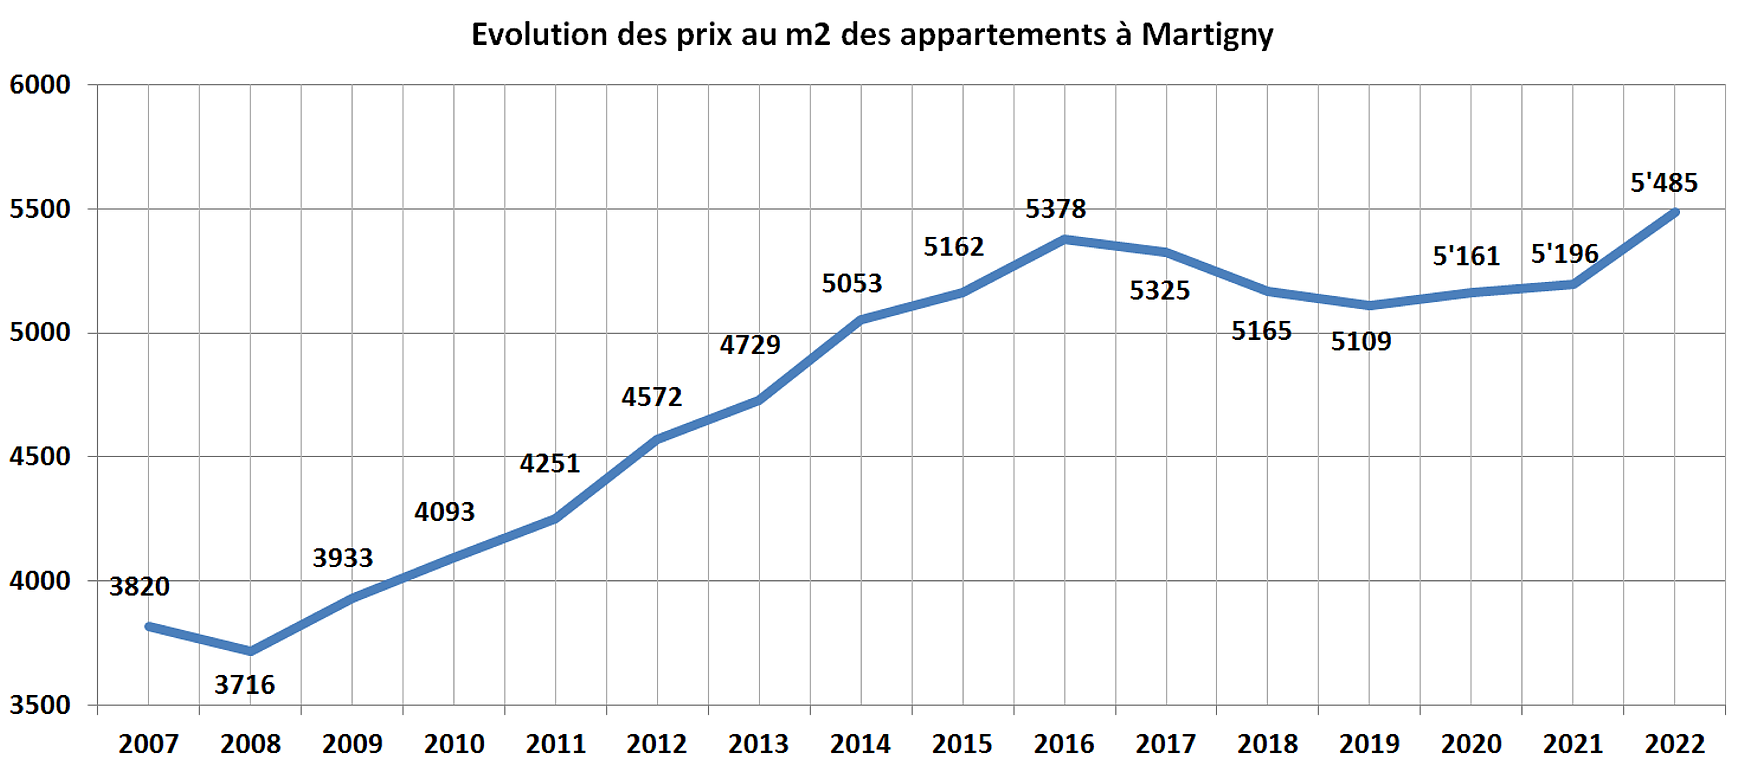 evolution prix m2 appartement martigny 2022